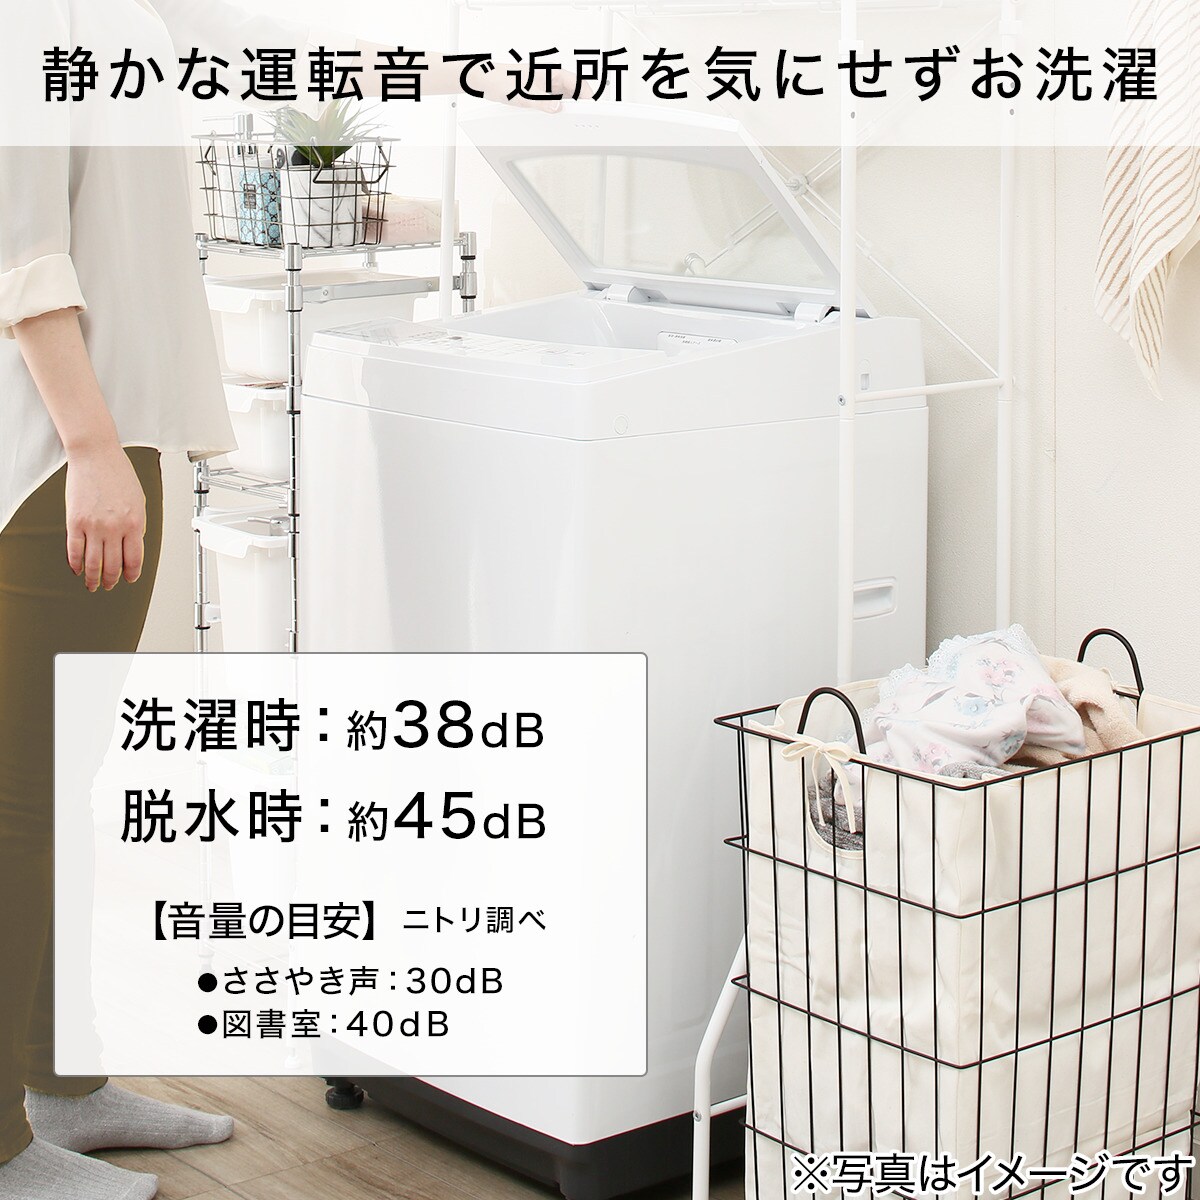 6kg全自動洗濯機 WH